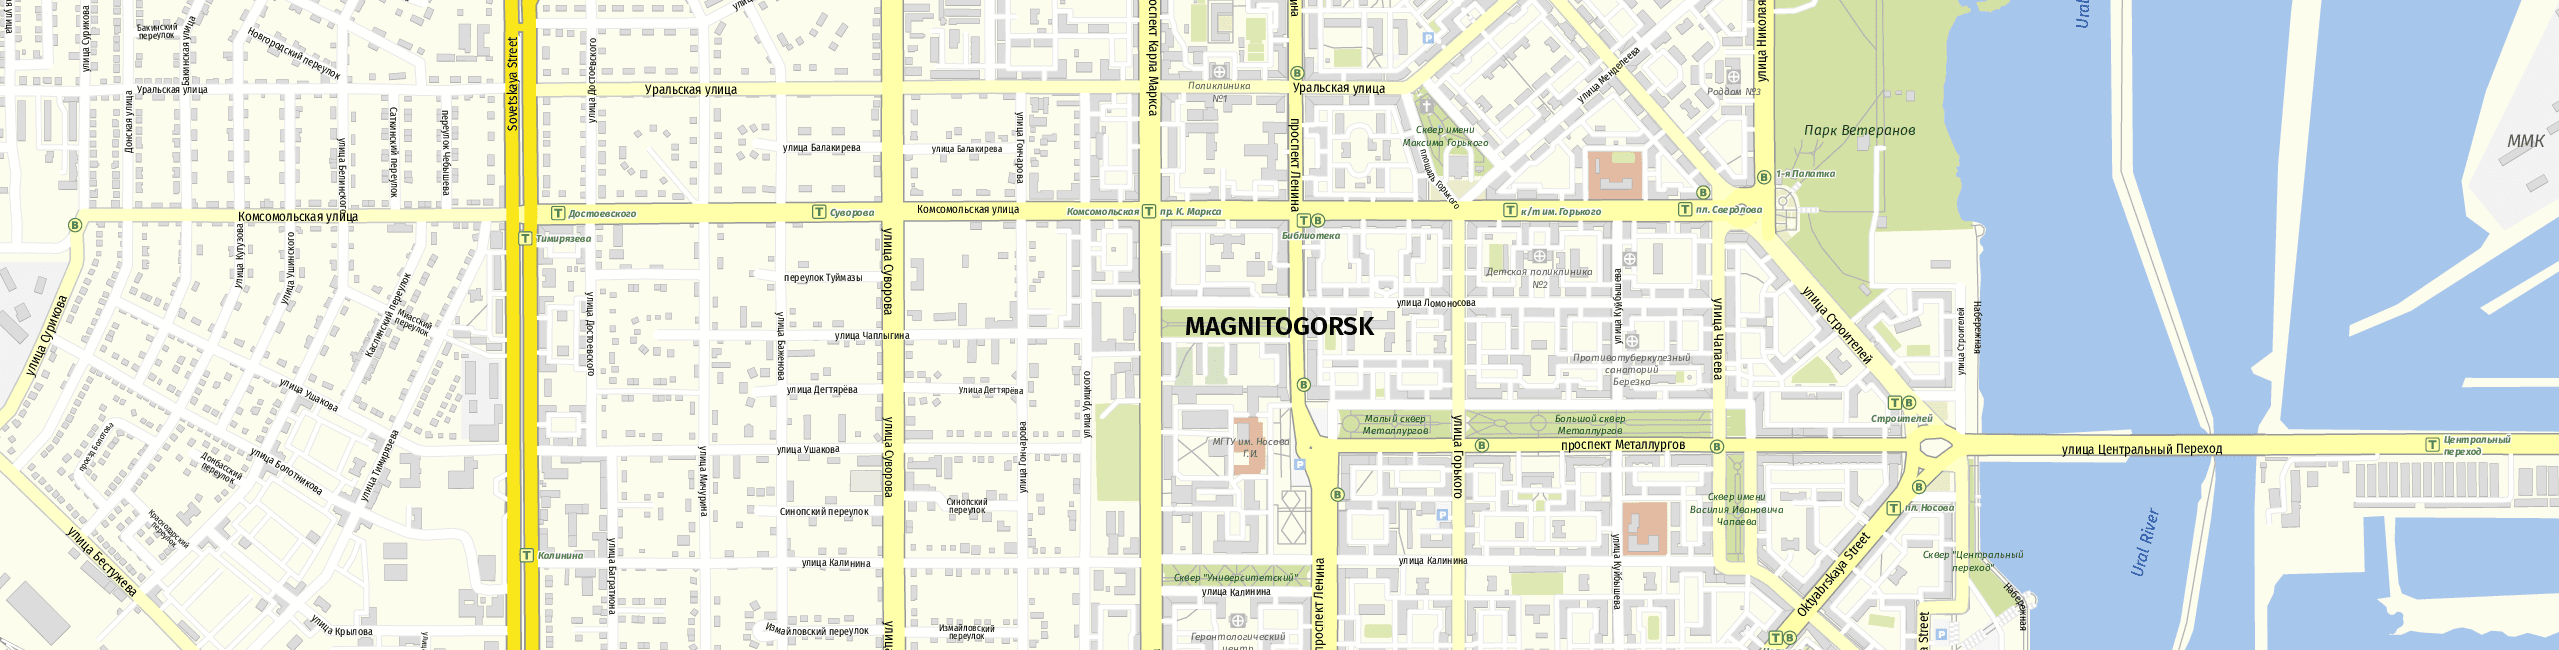 Stadtplan Magnitogorsk zum Downloaden.